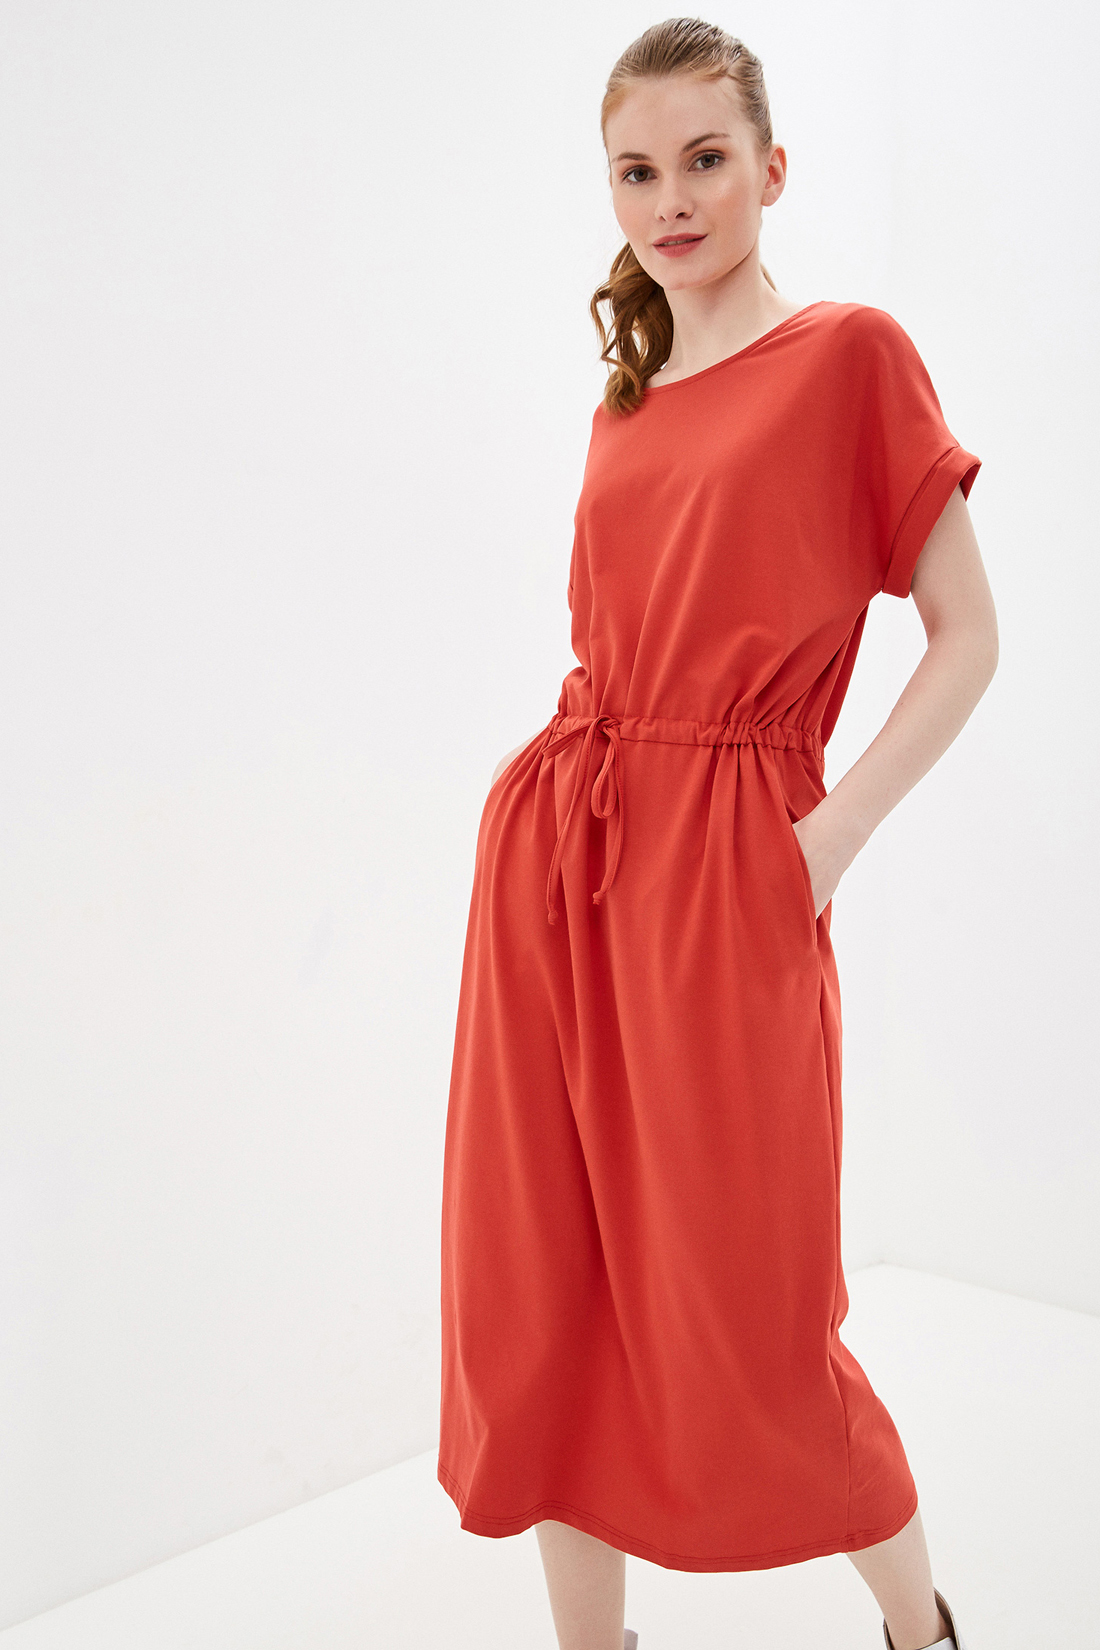 Трикотажное платье (арт. baon B450082), размер XS, цвет красный Трикотажное платье (арт. baon B450082) - фото 4